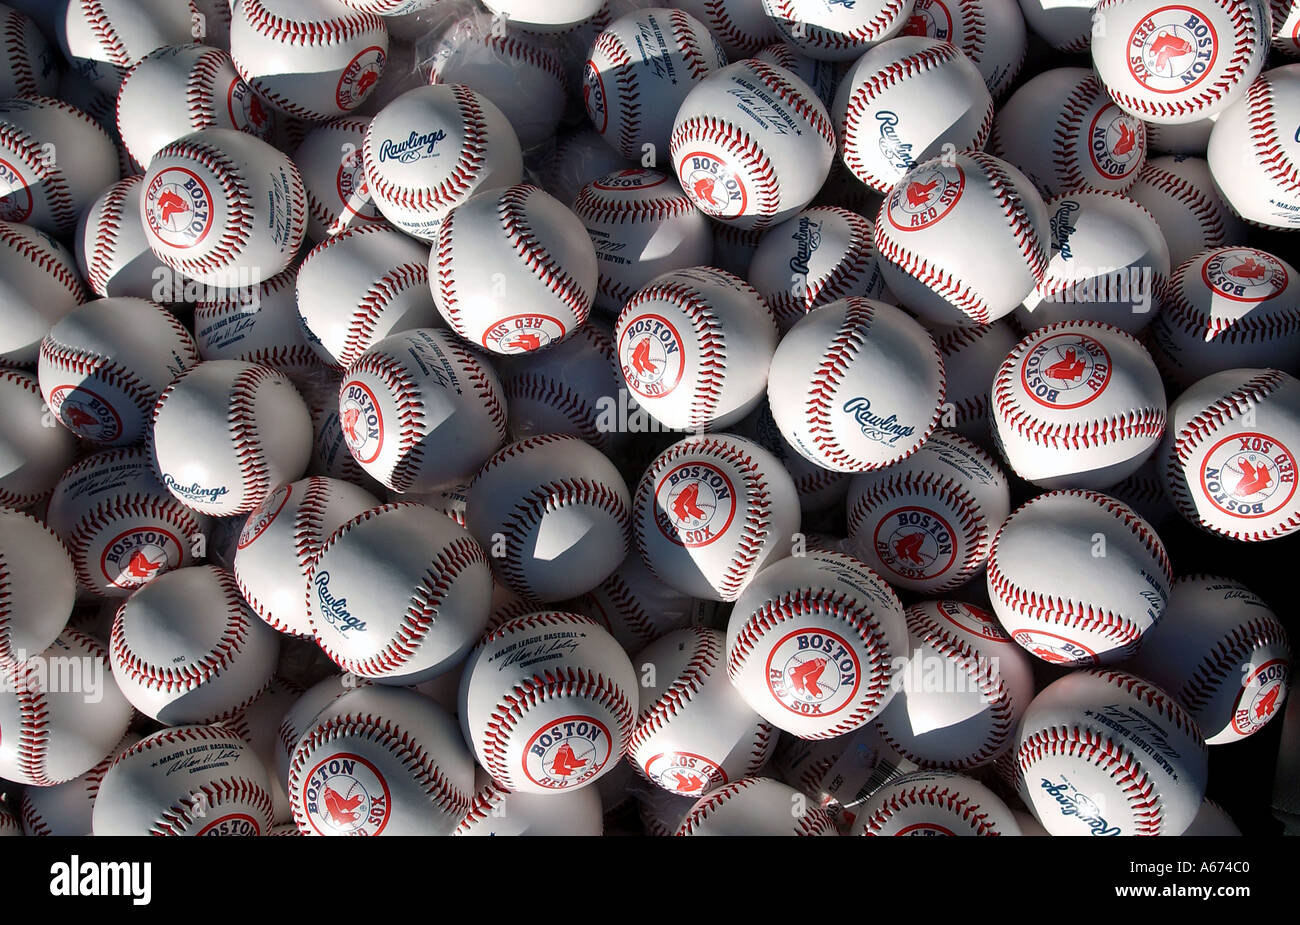 Un cestino pieno di Red Sox baseballs Foto Stock